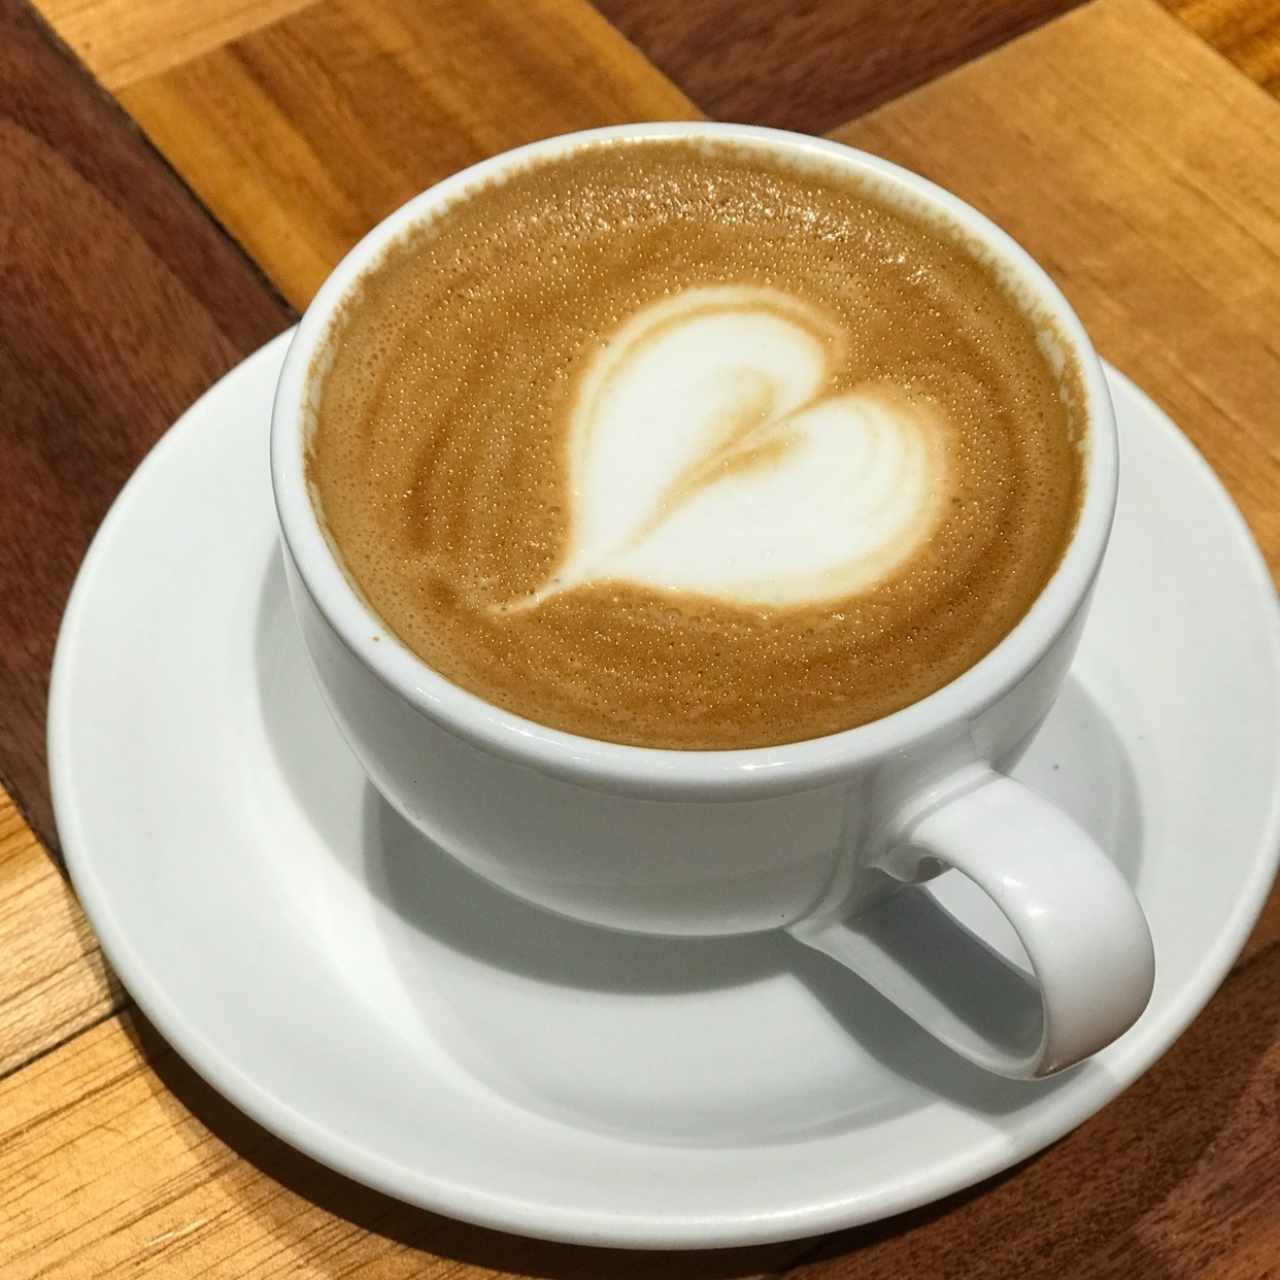 Cappuccino con leche deslactosada